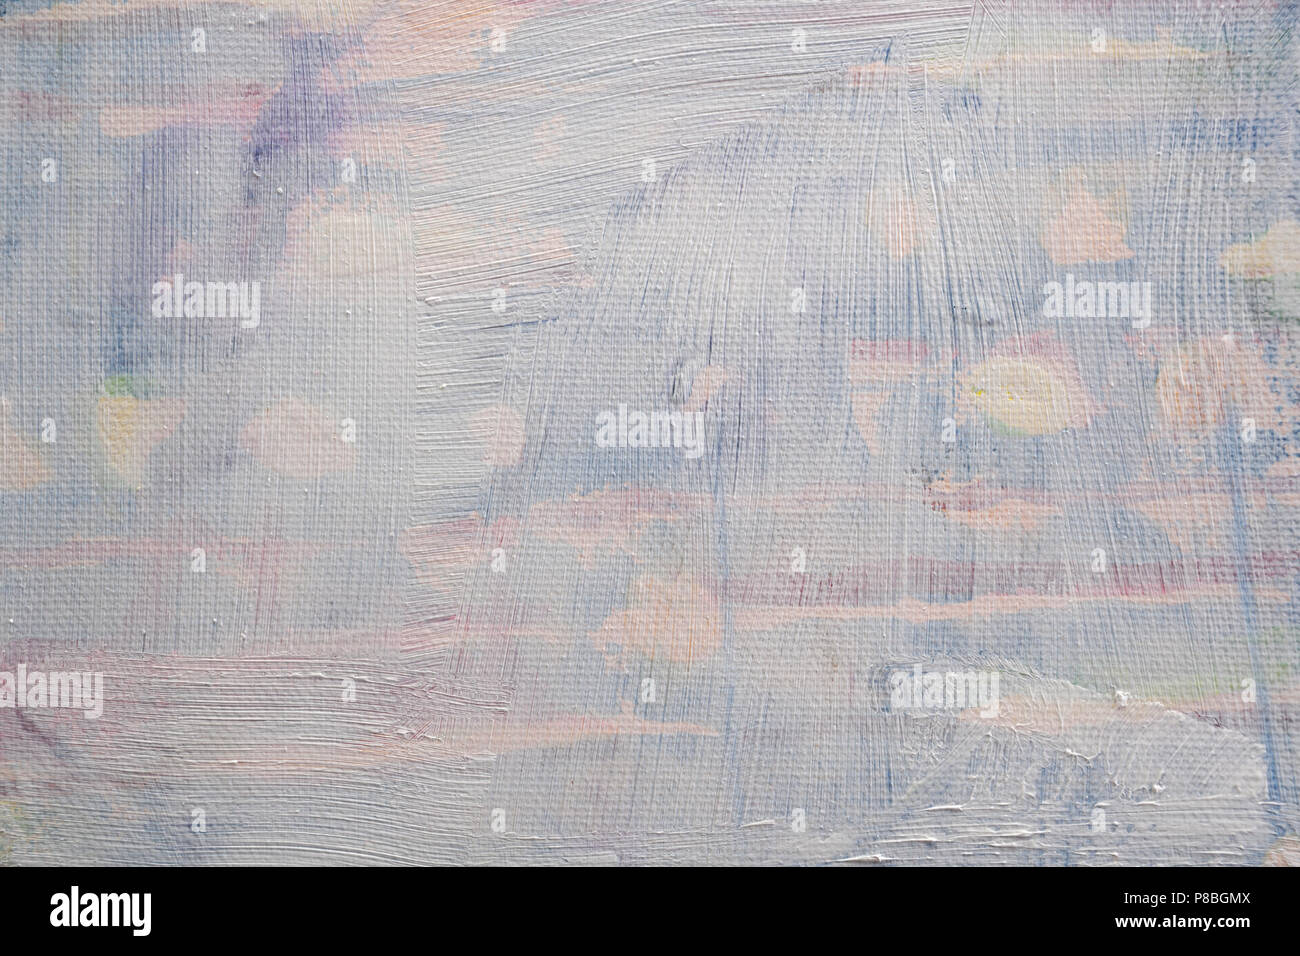 Abgelehnt Art Canvas Überlackieren mit verdünnter gesso Grundierung, full frame Hintergrund Textur Stockfoto